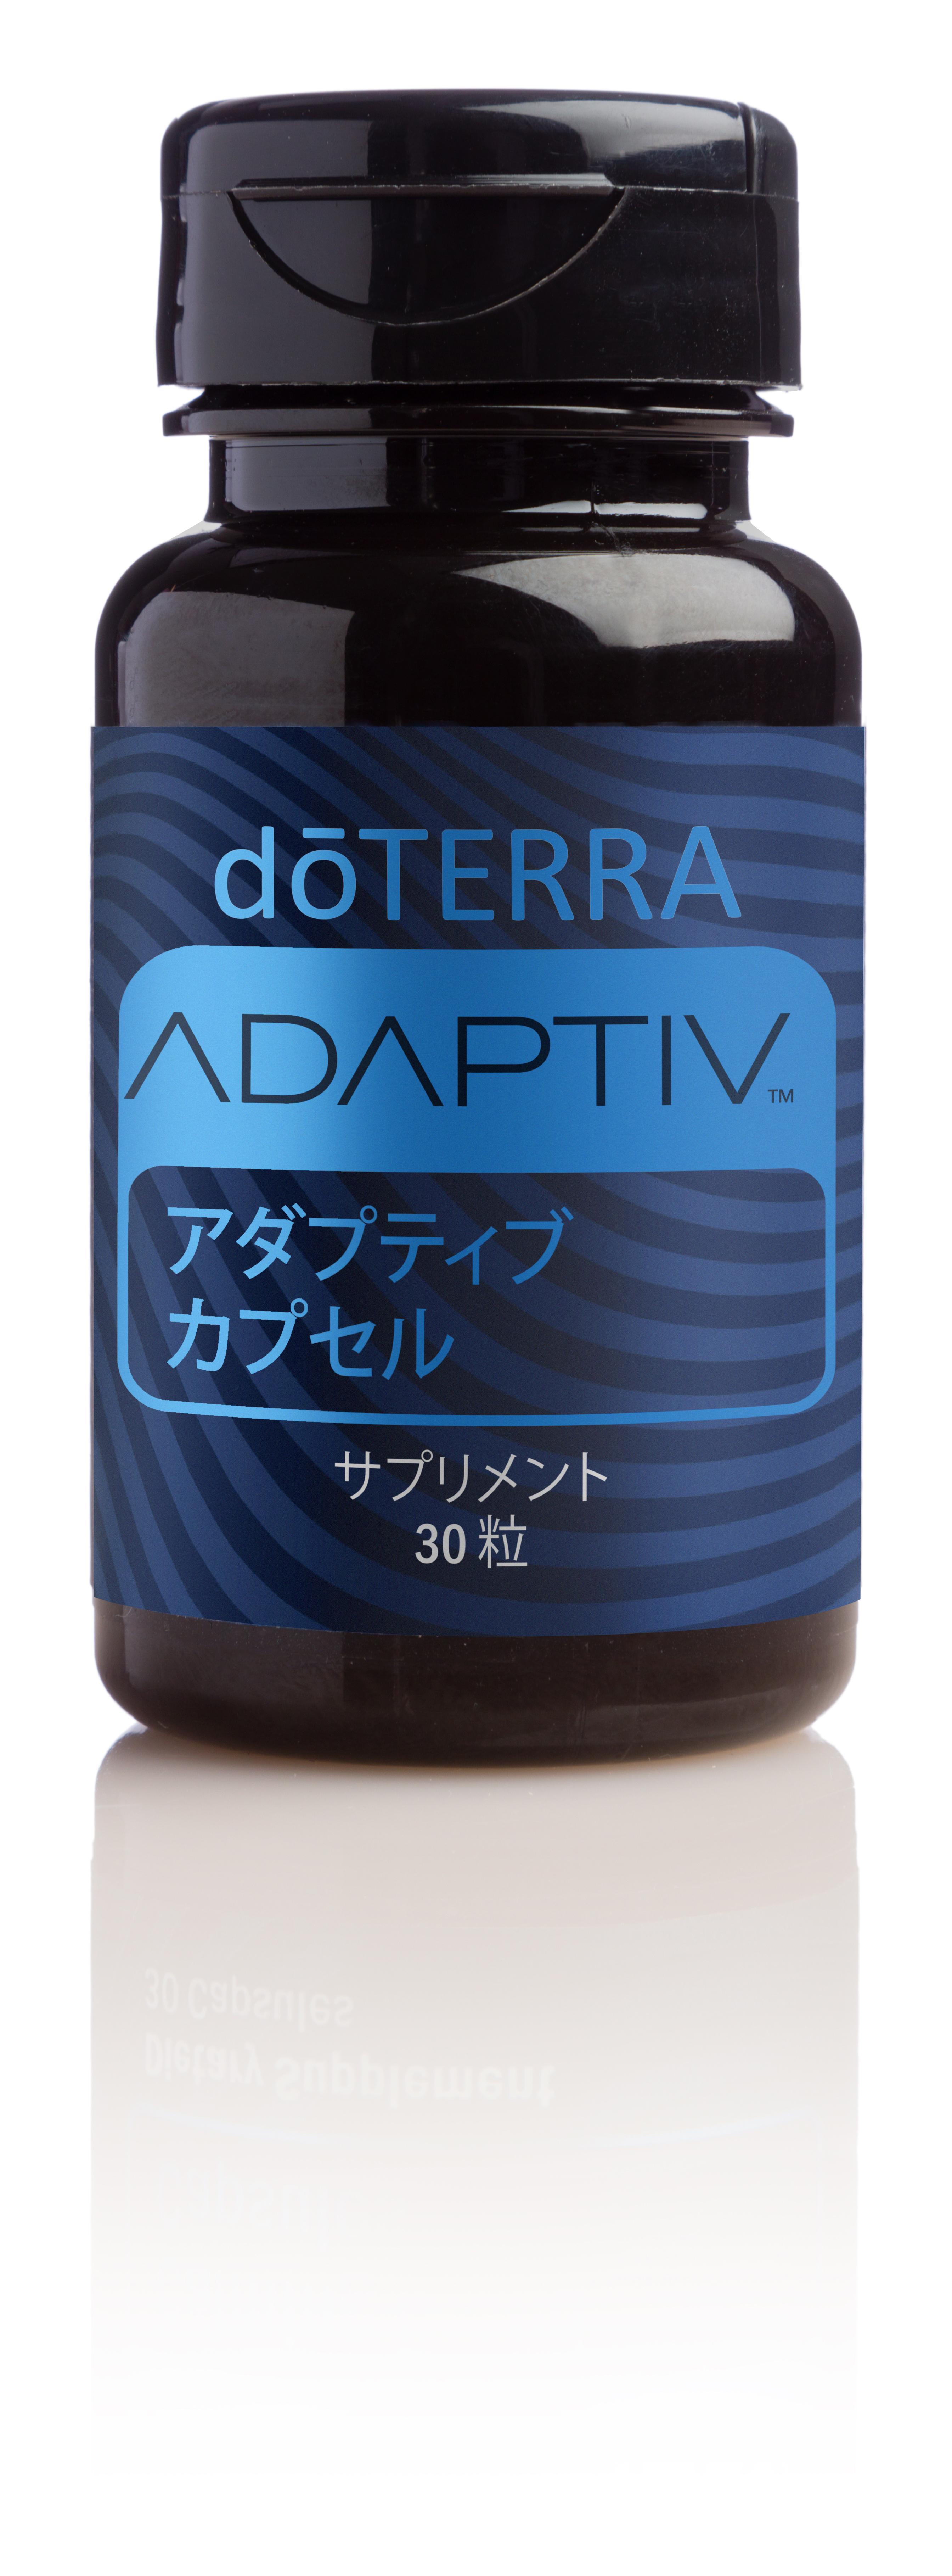 アダプティブ カプセル | doTERRA Essential Oils